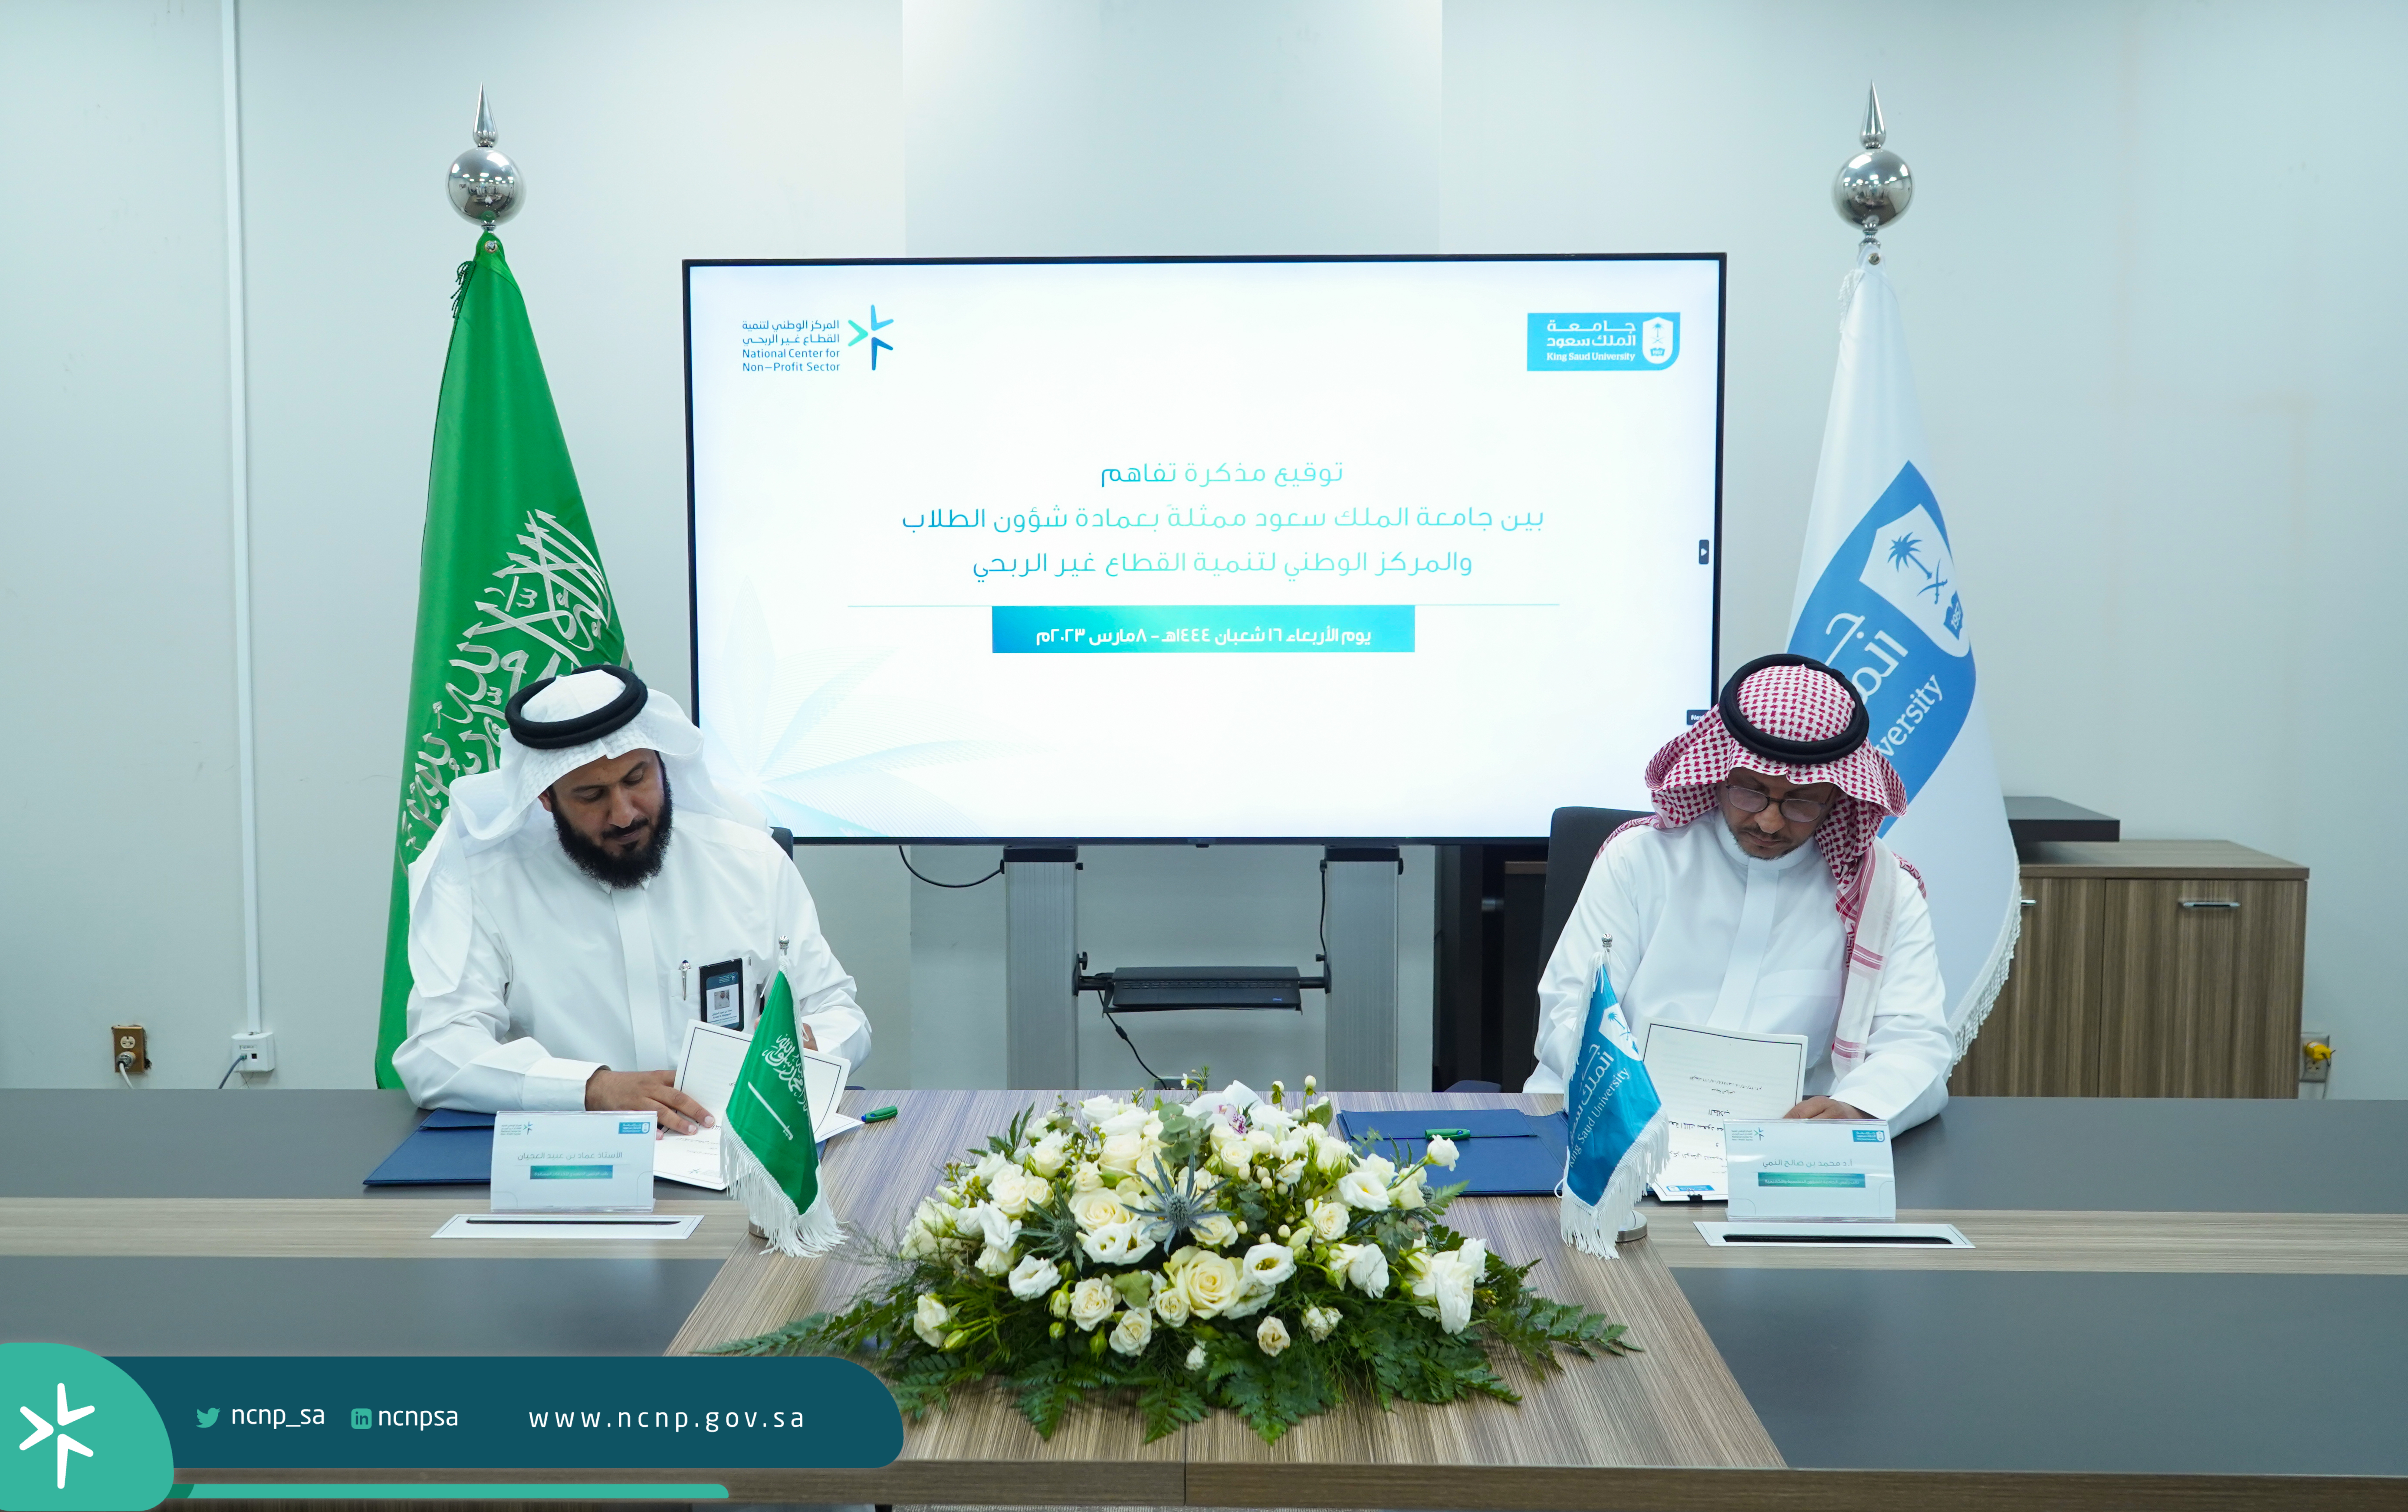 المركز الوطني لتنمية القطاع غير الربحي يجري اتفاقية تفاهم مع جامعة الملك سعود لدعم القضايا الاجتماعية 